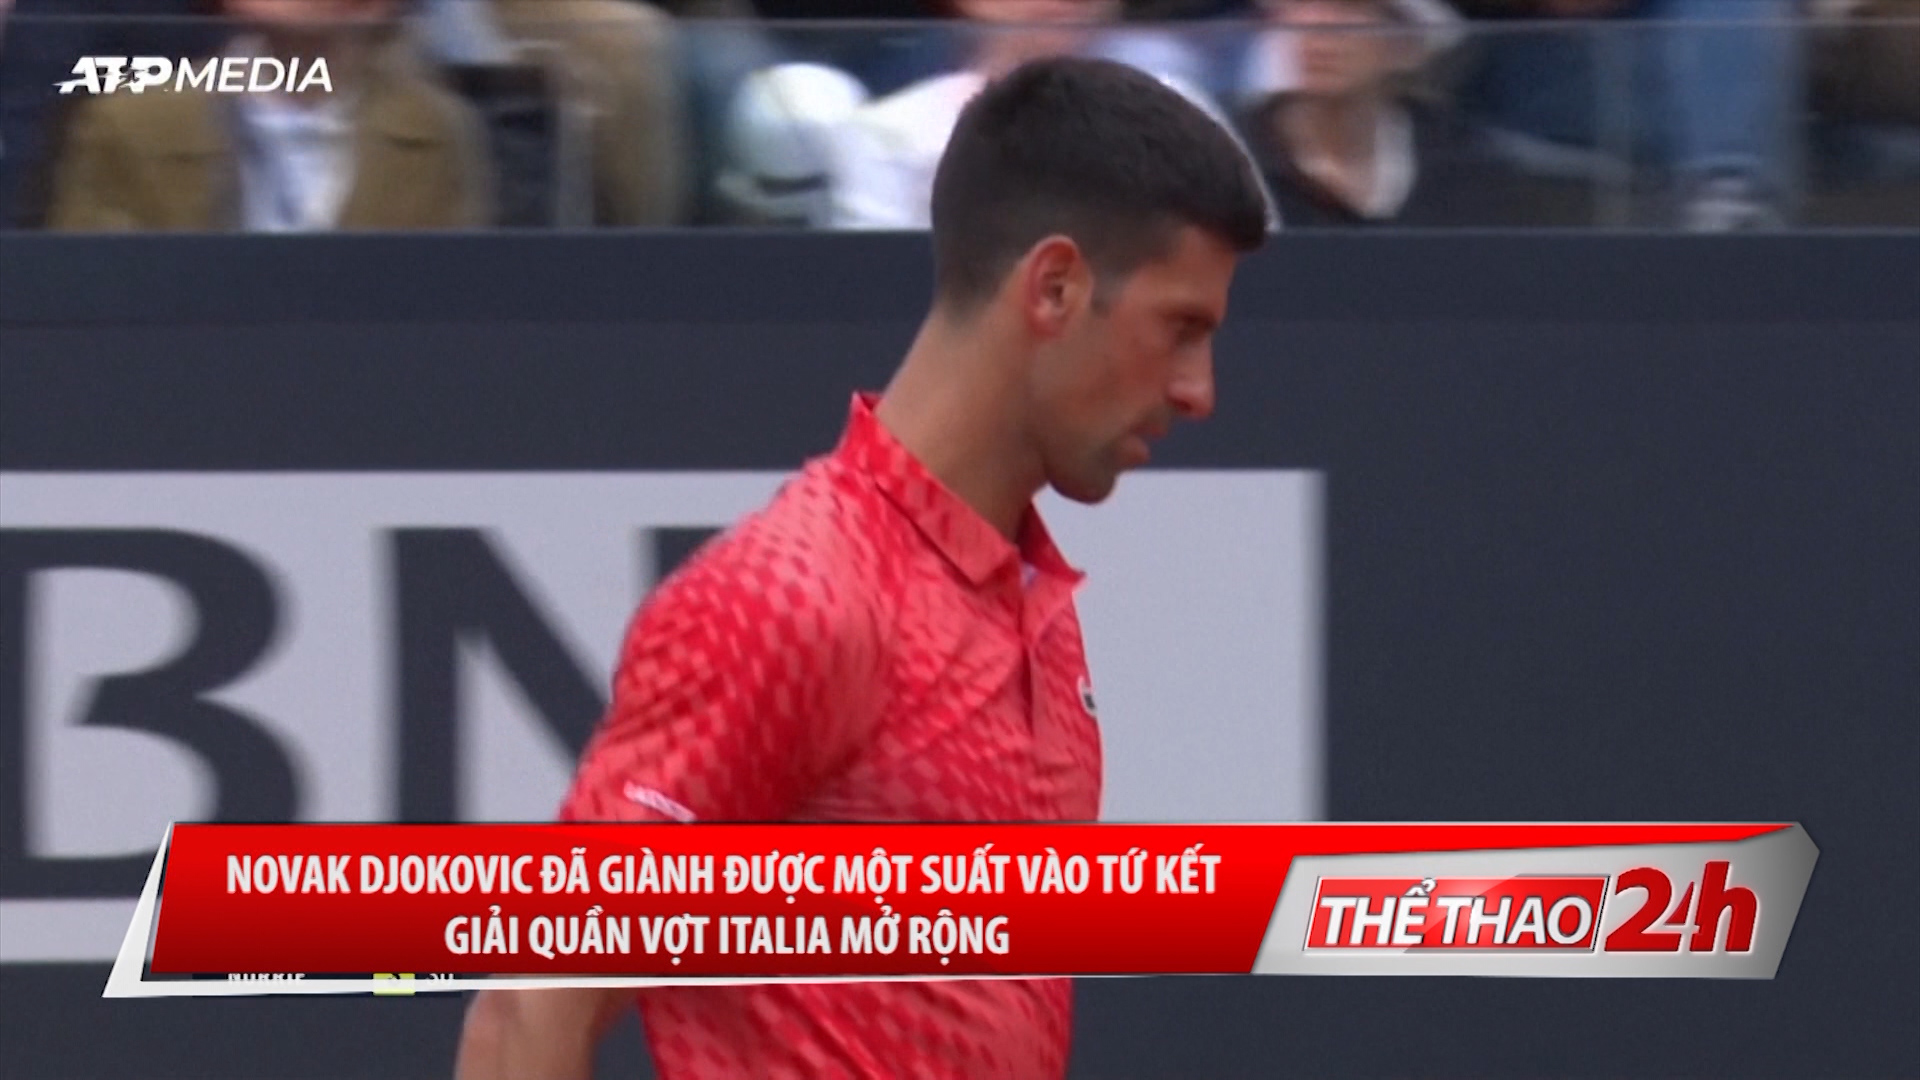 Novak Djokovic  đã giành được một suất vào tứ kết giải quần vợt Italia mở rộng